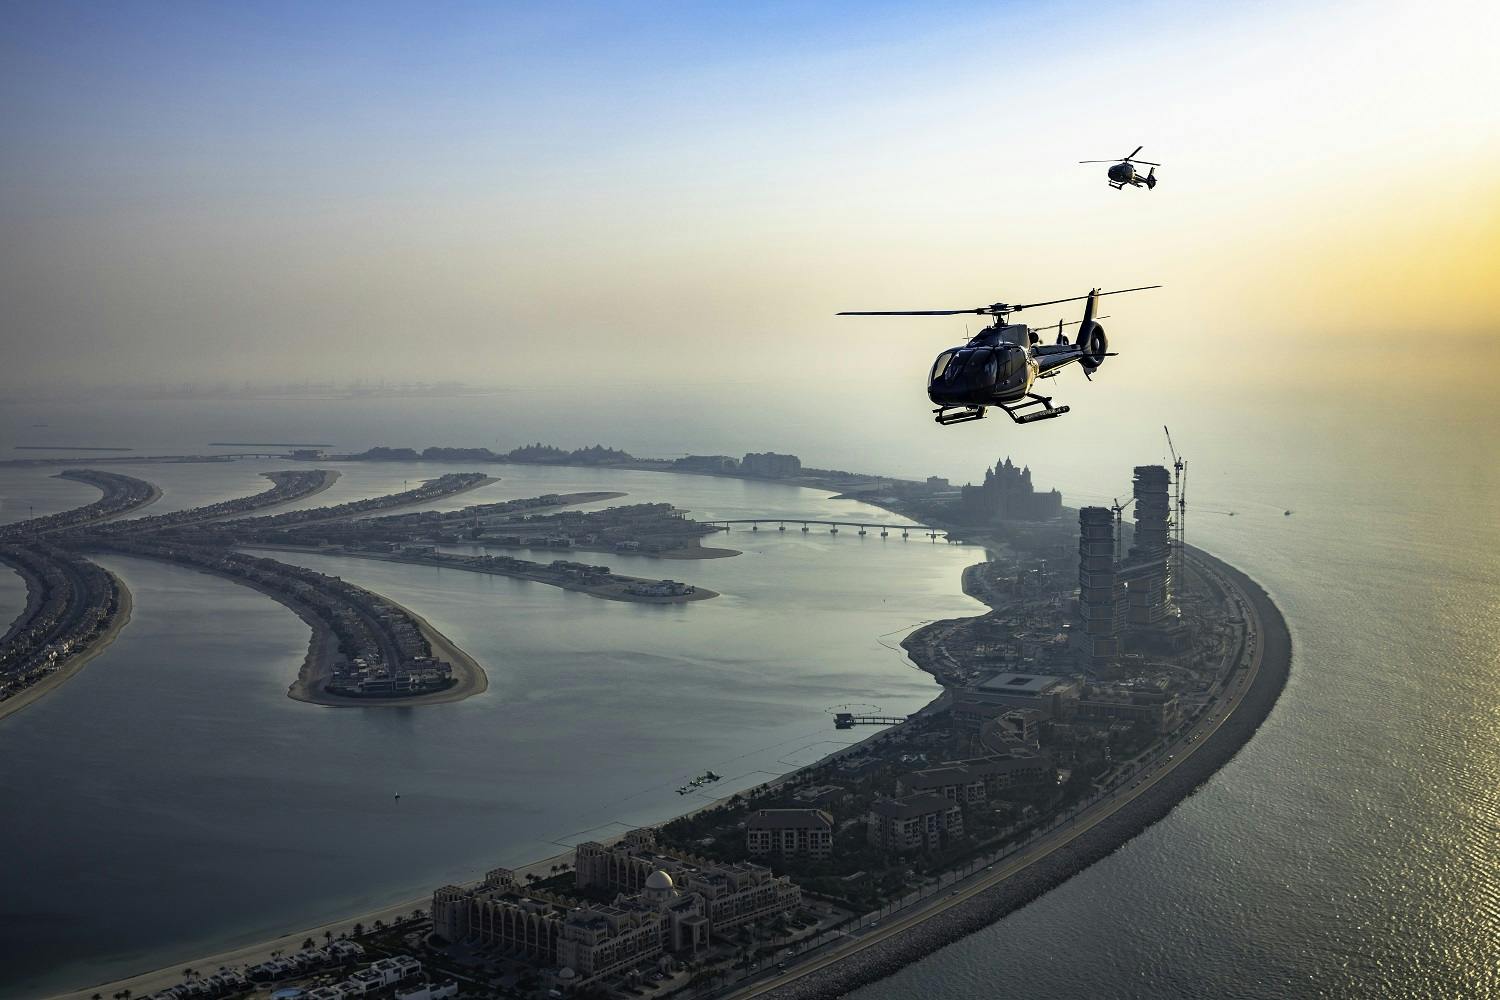 15-minütiger, unterhaltsamer Helikopterflug über Dubai